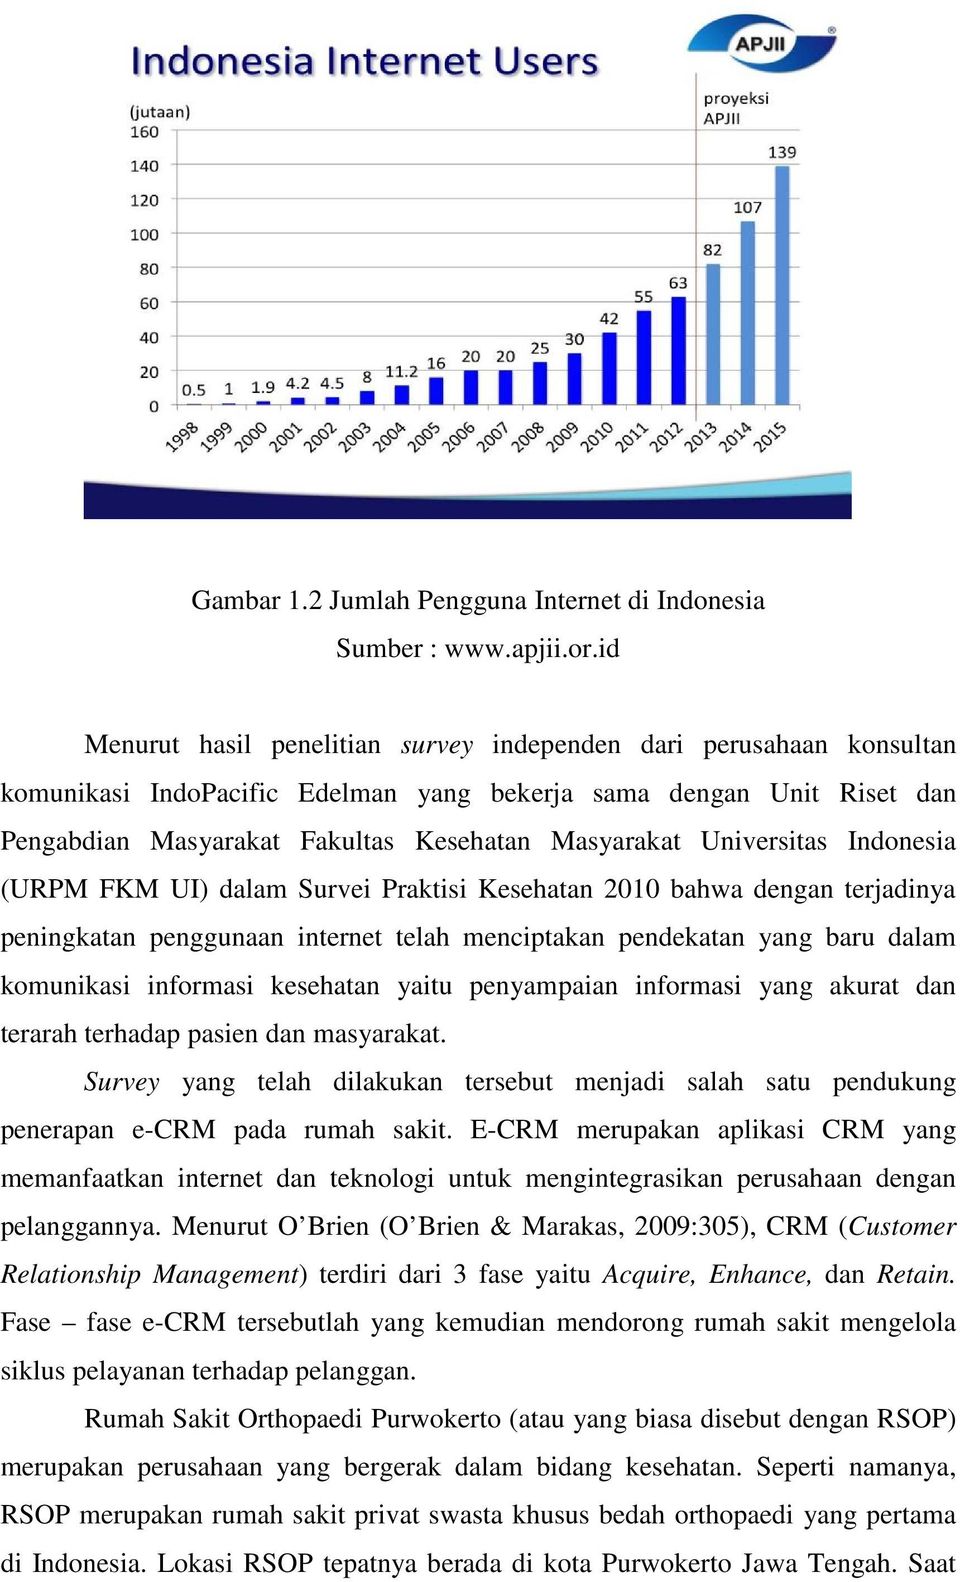 Universitas Indonesia (URPM FKM UI) dalam Survei Praktisi Kesehatan 2010 bahwa dengan terjadinya peningkatan penggunaan internet telah menciptakan pendekatan yang baru dalam komunikasi informasi